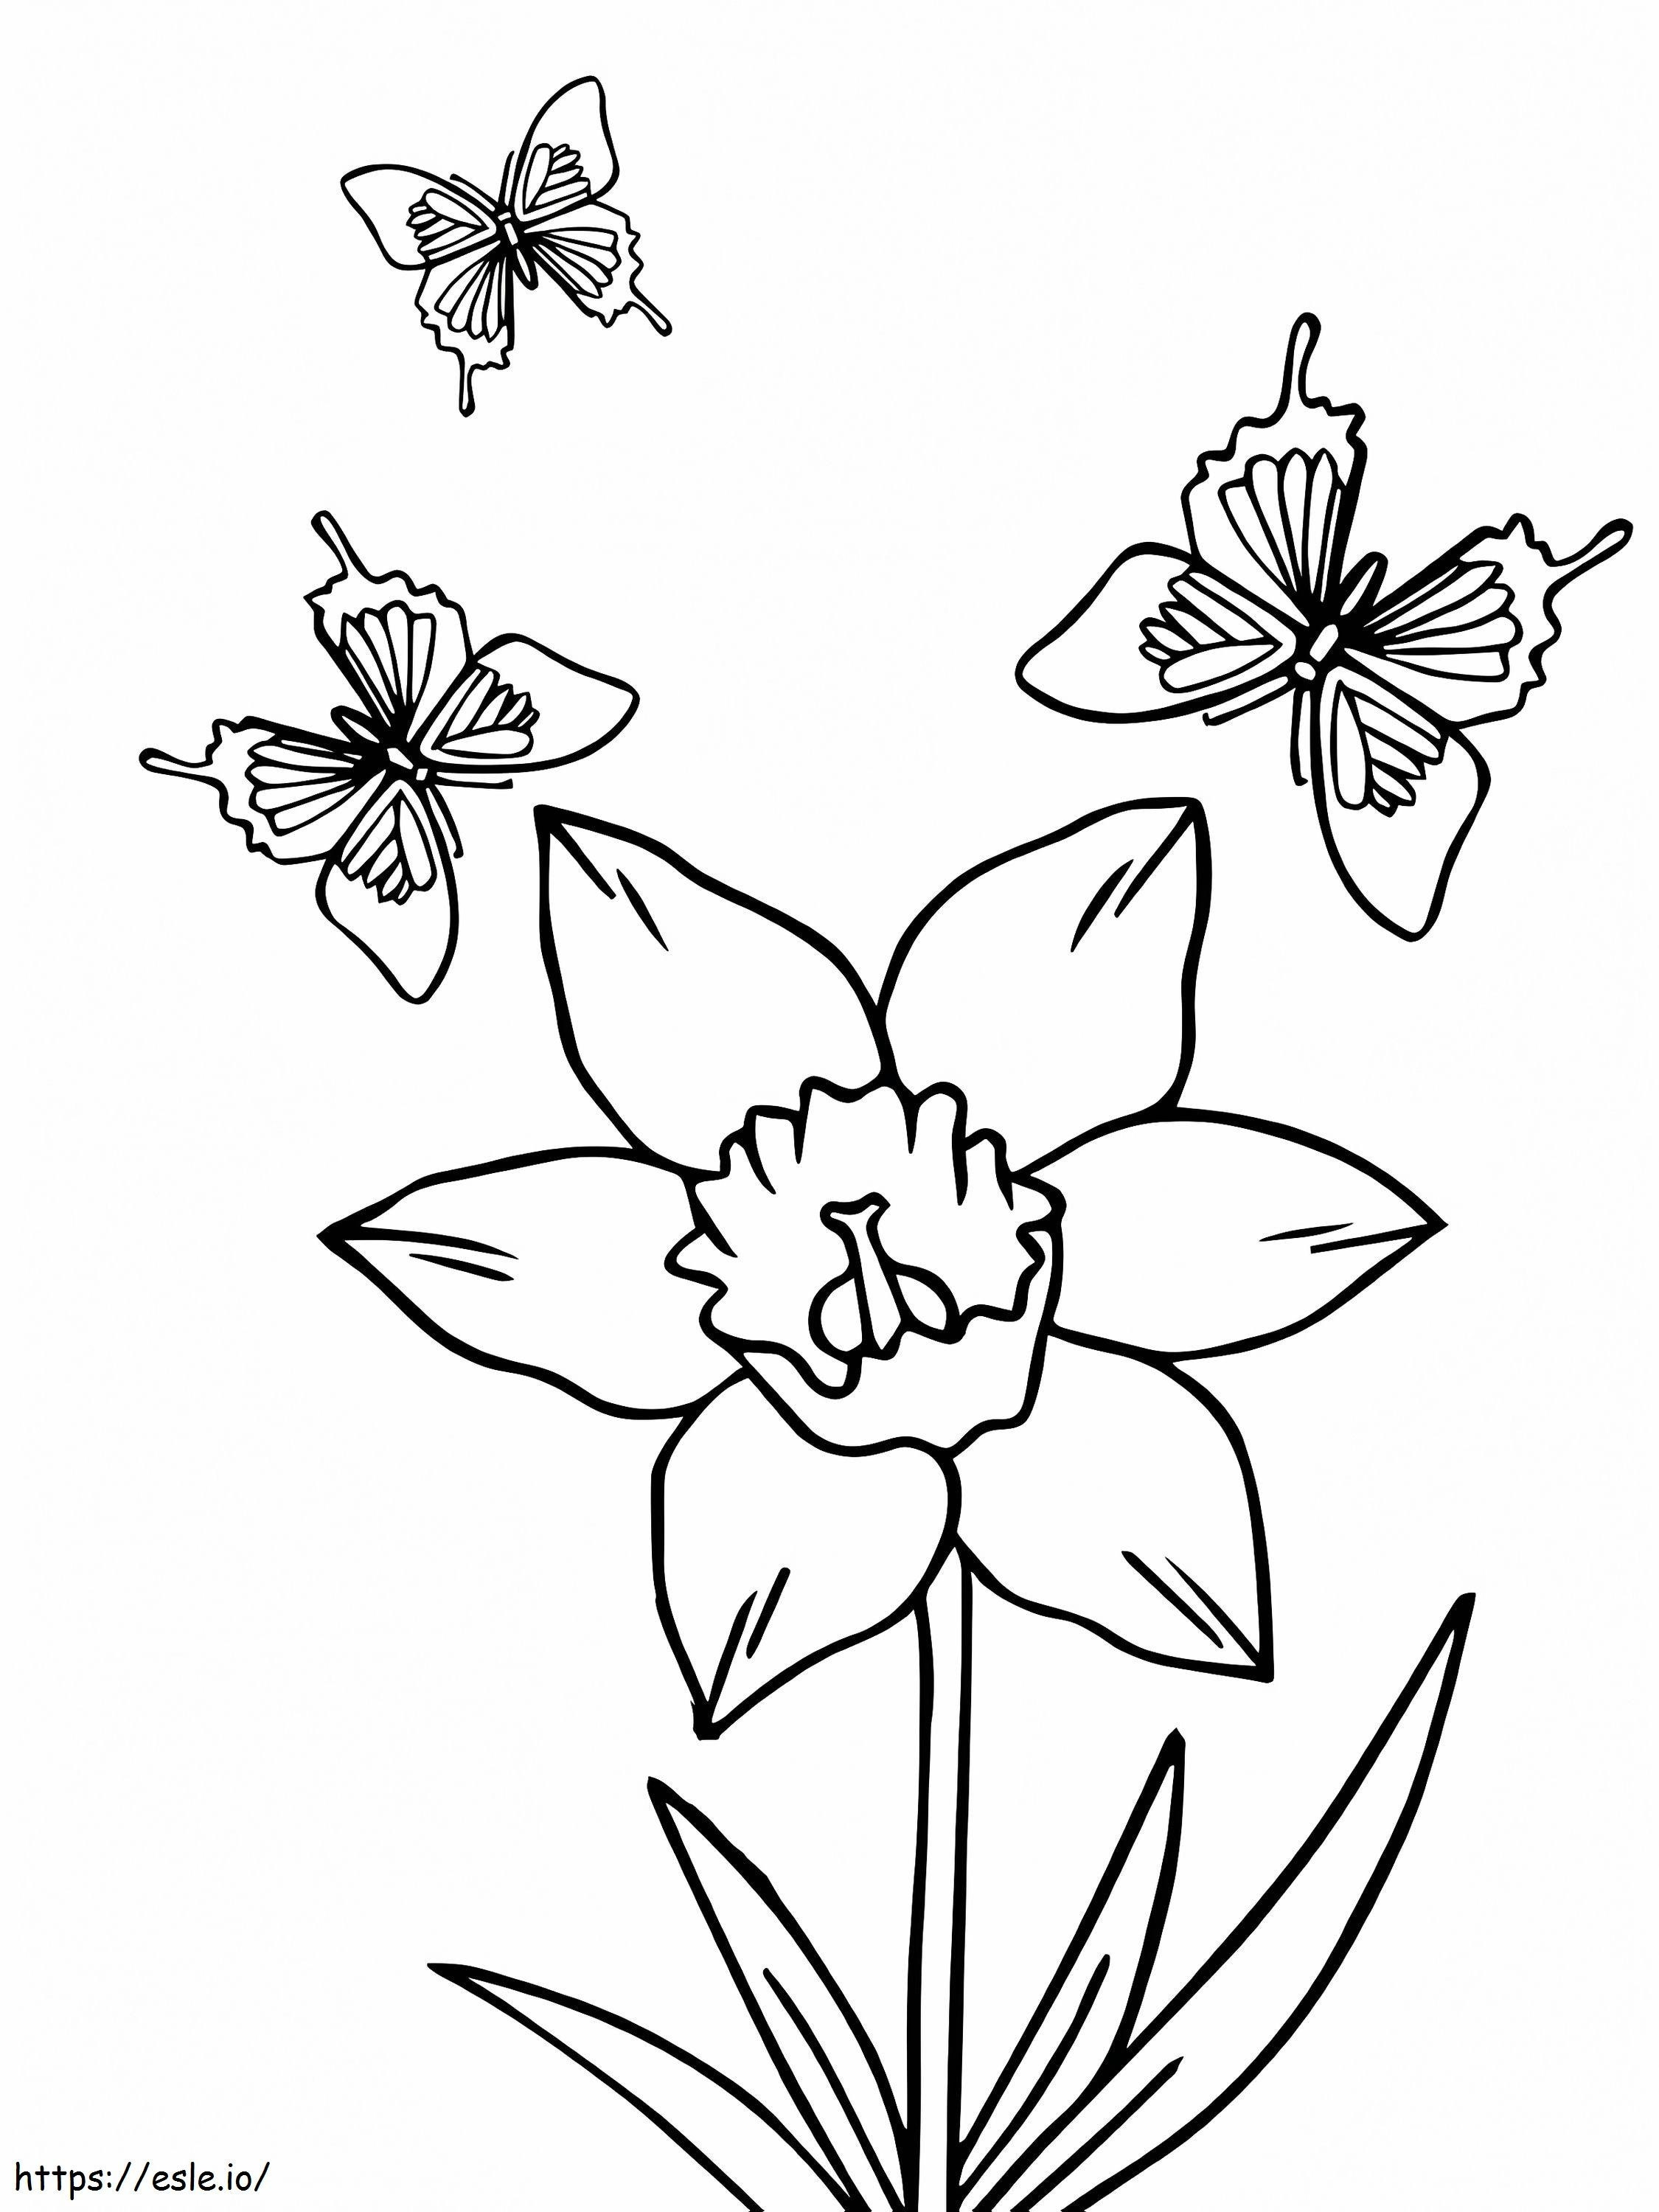 Três borboletas e flor de narciso para colorir